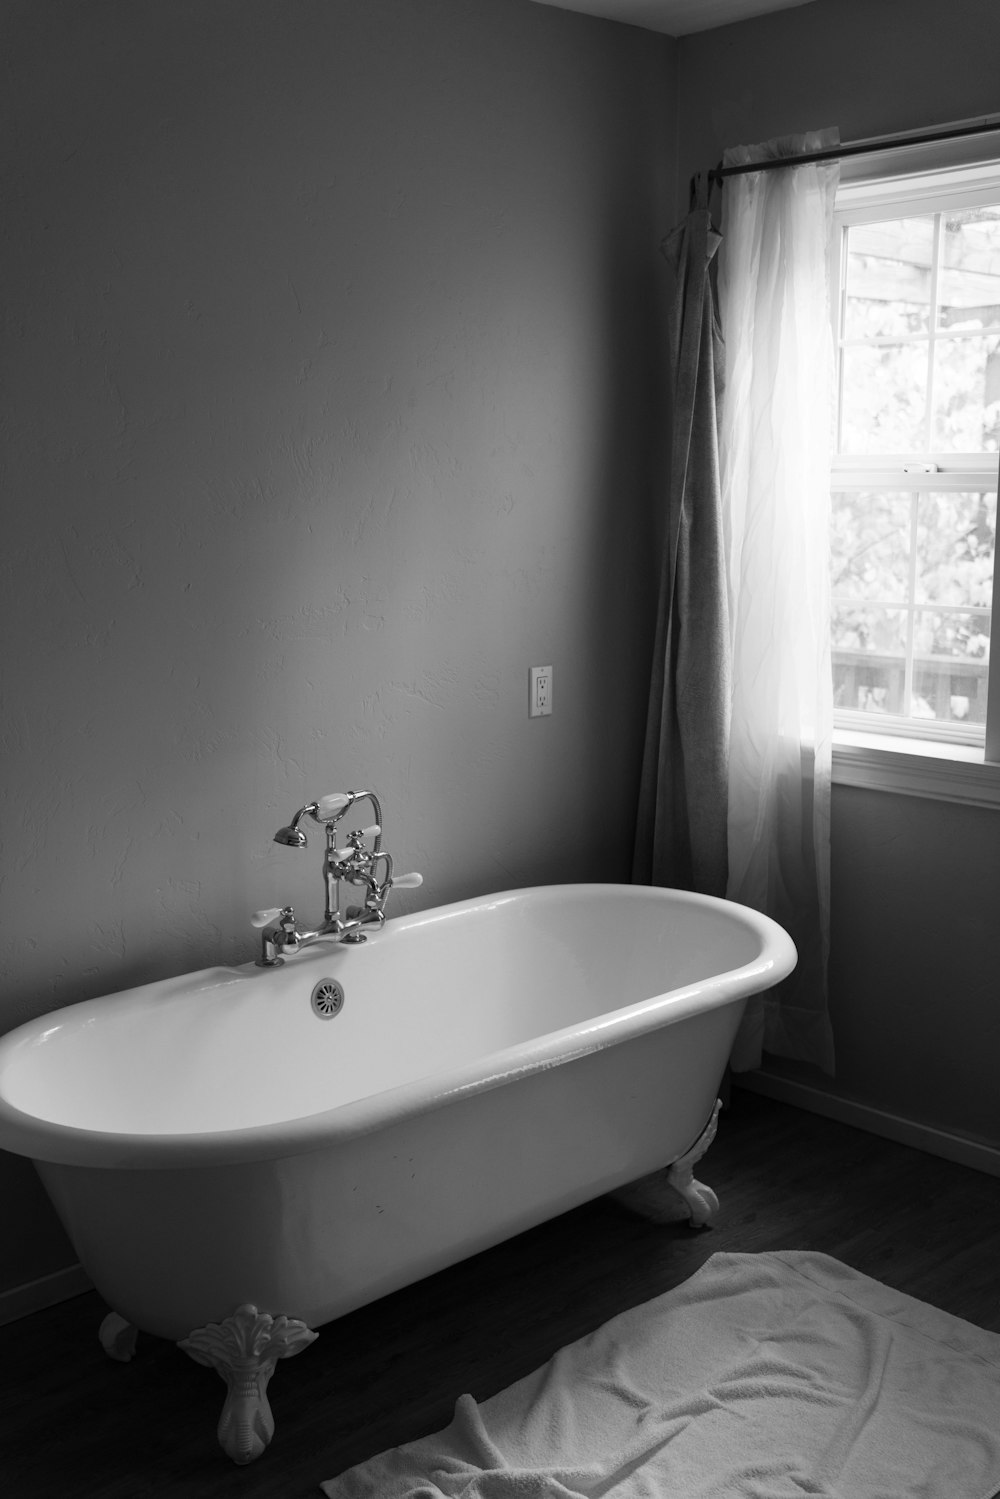 bañera de cerámica blanca dentro de la habitación